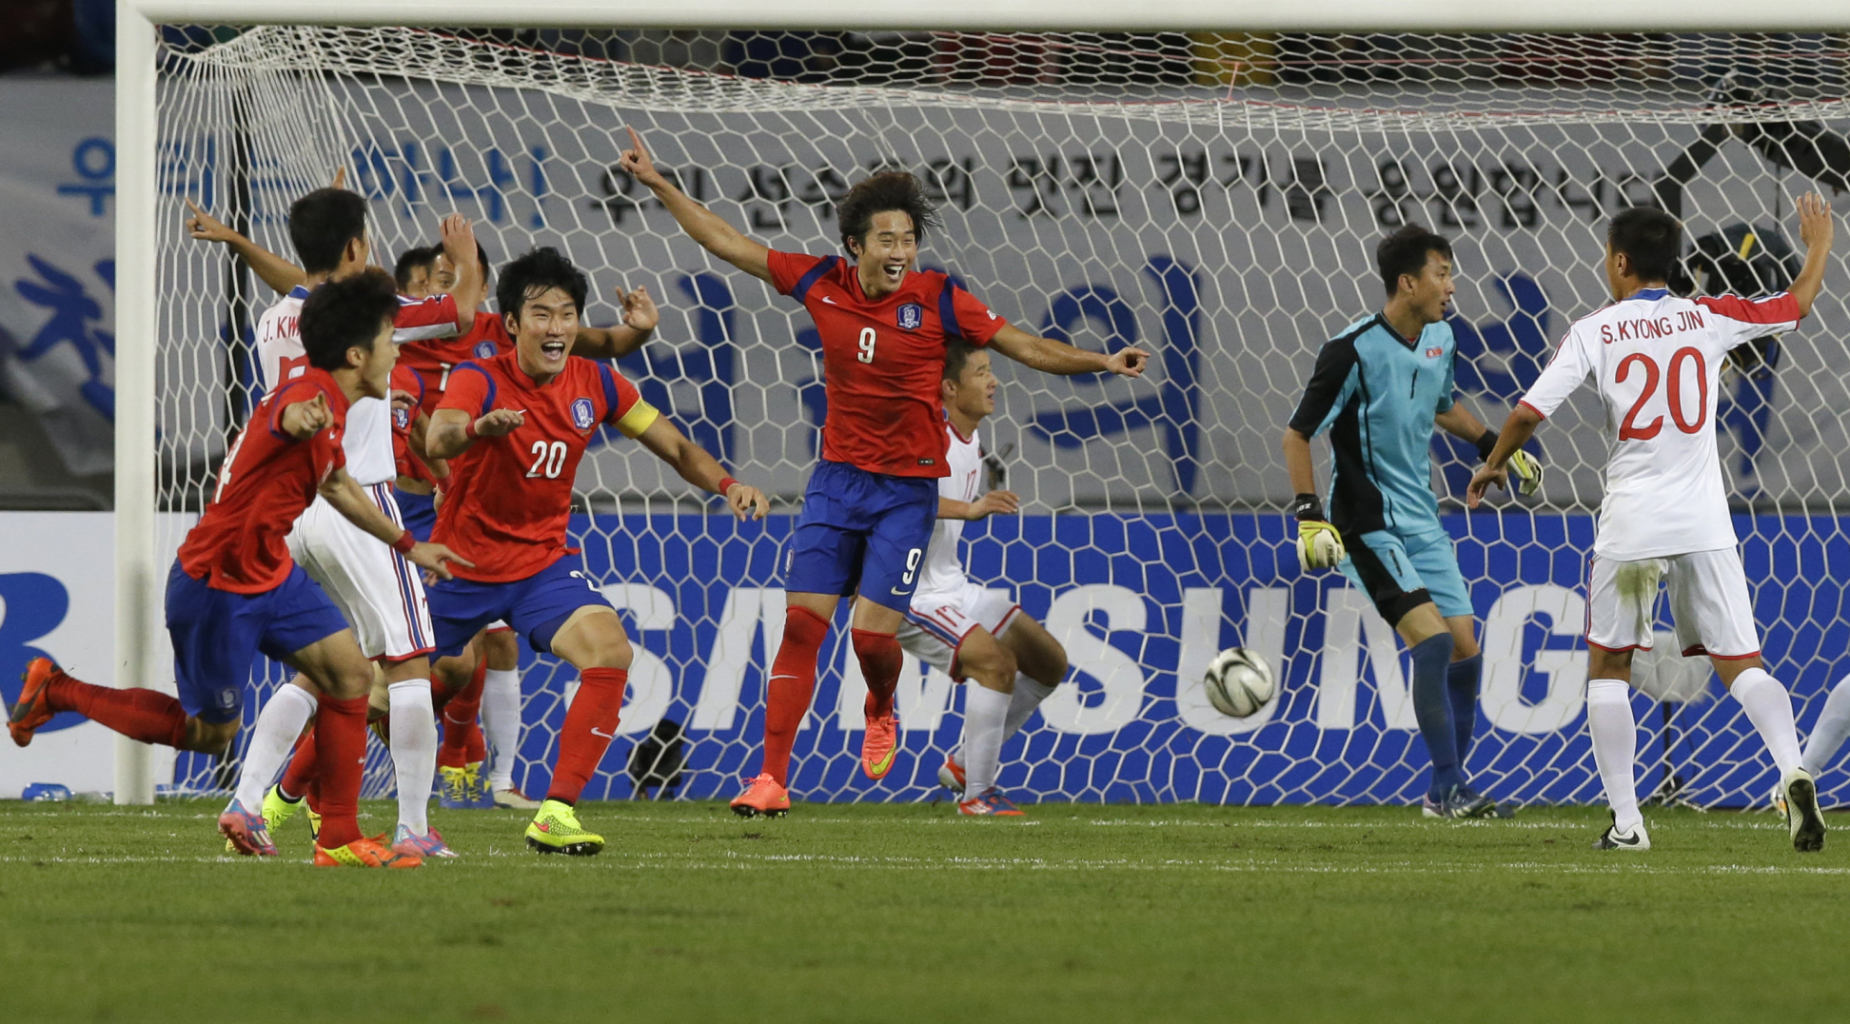 عکس روز: قهرمانی تیم ملی فوتبال کره جنوبی در بازی های آسیایی 